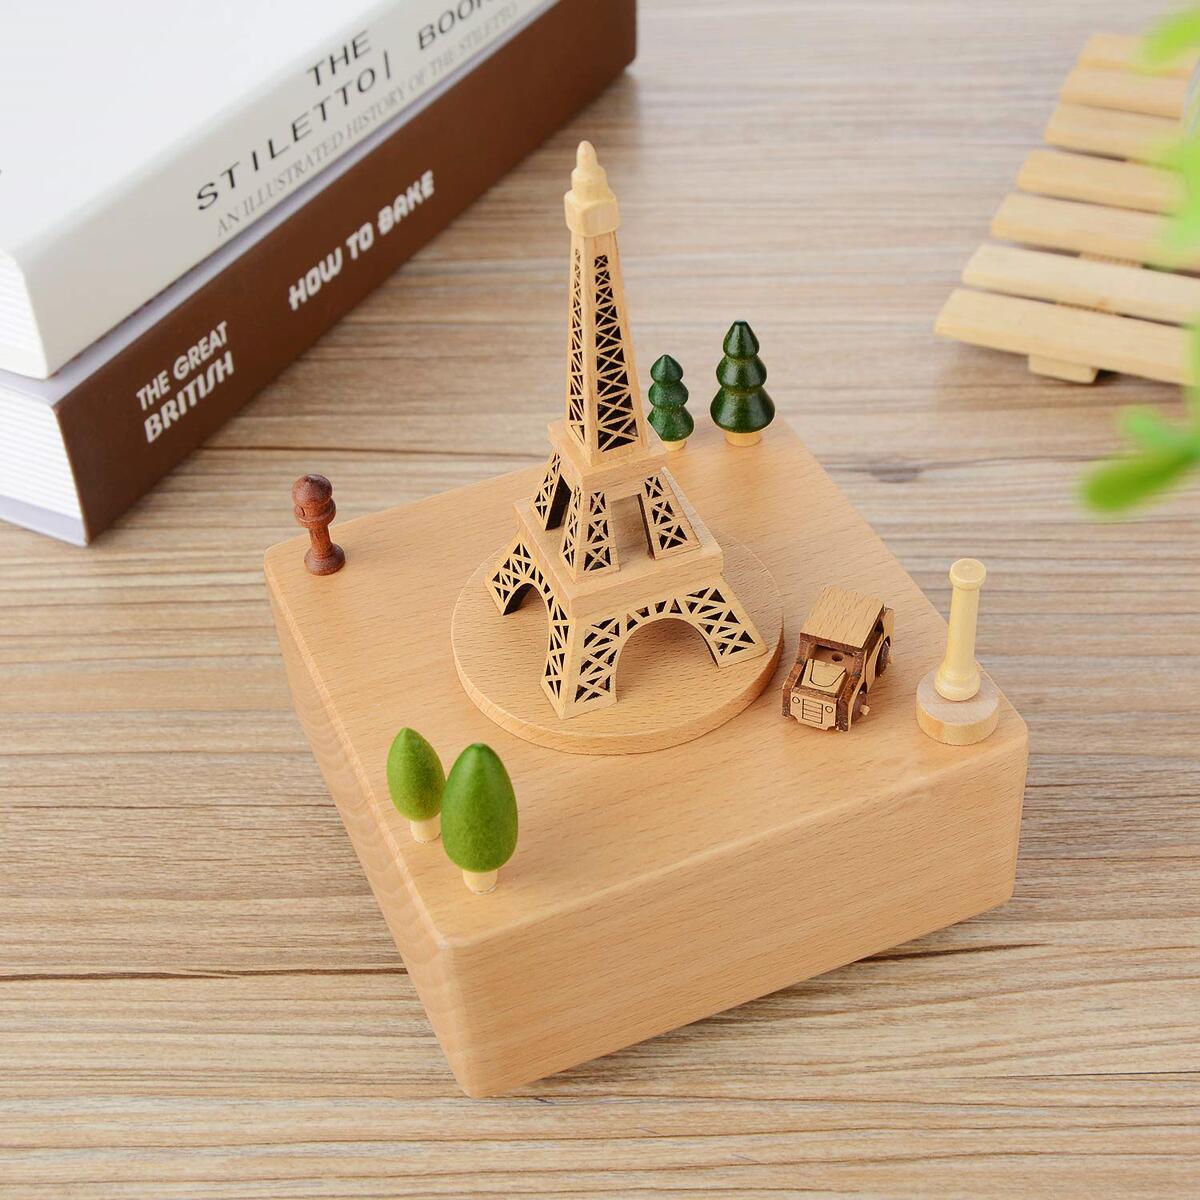 Spieluhr „Pariser Eiffelturm“ (Melodie: Meet)